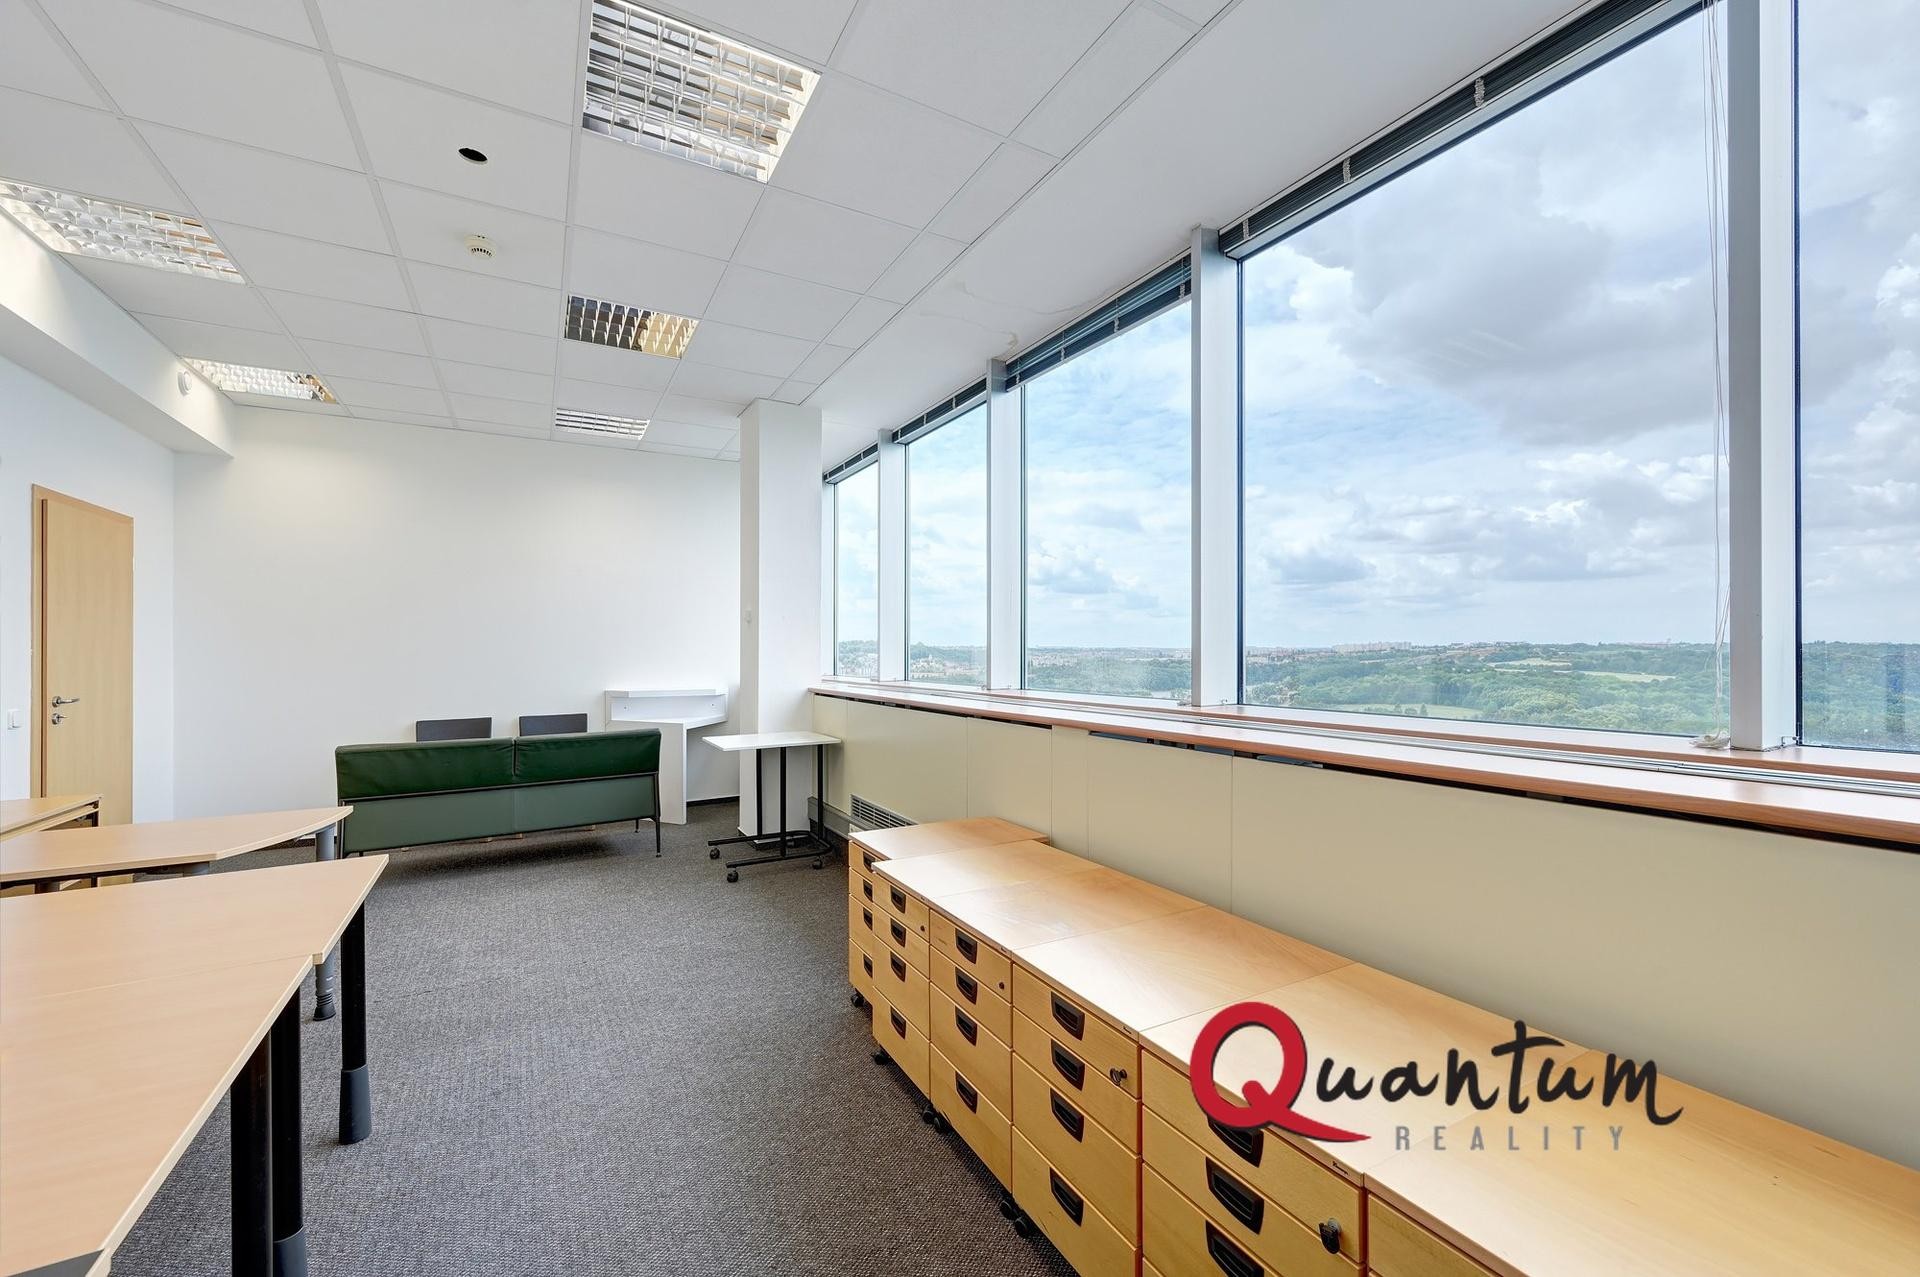 Pronájem kancelářských prostor 95 m2 v administrativní budově Shiran Tower, Praha 6 - Vokovice, ul. 